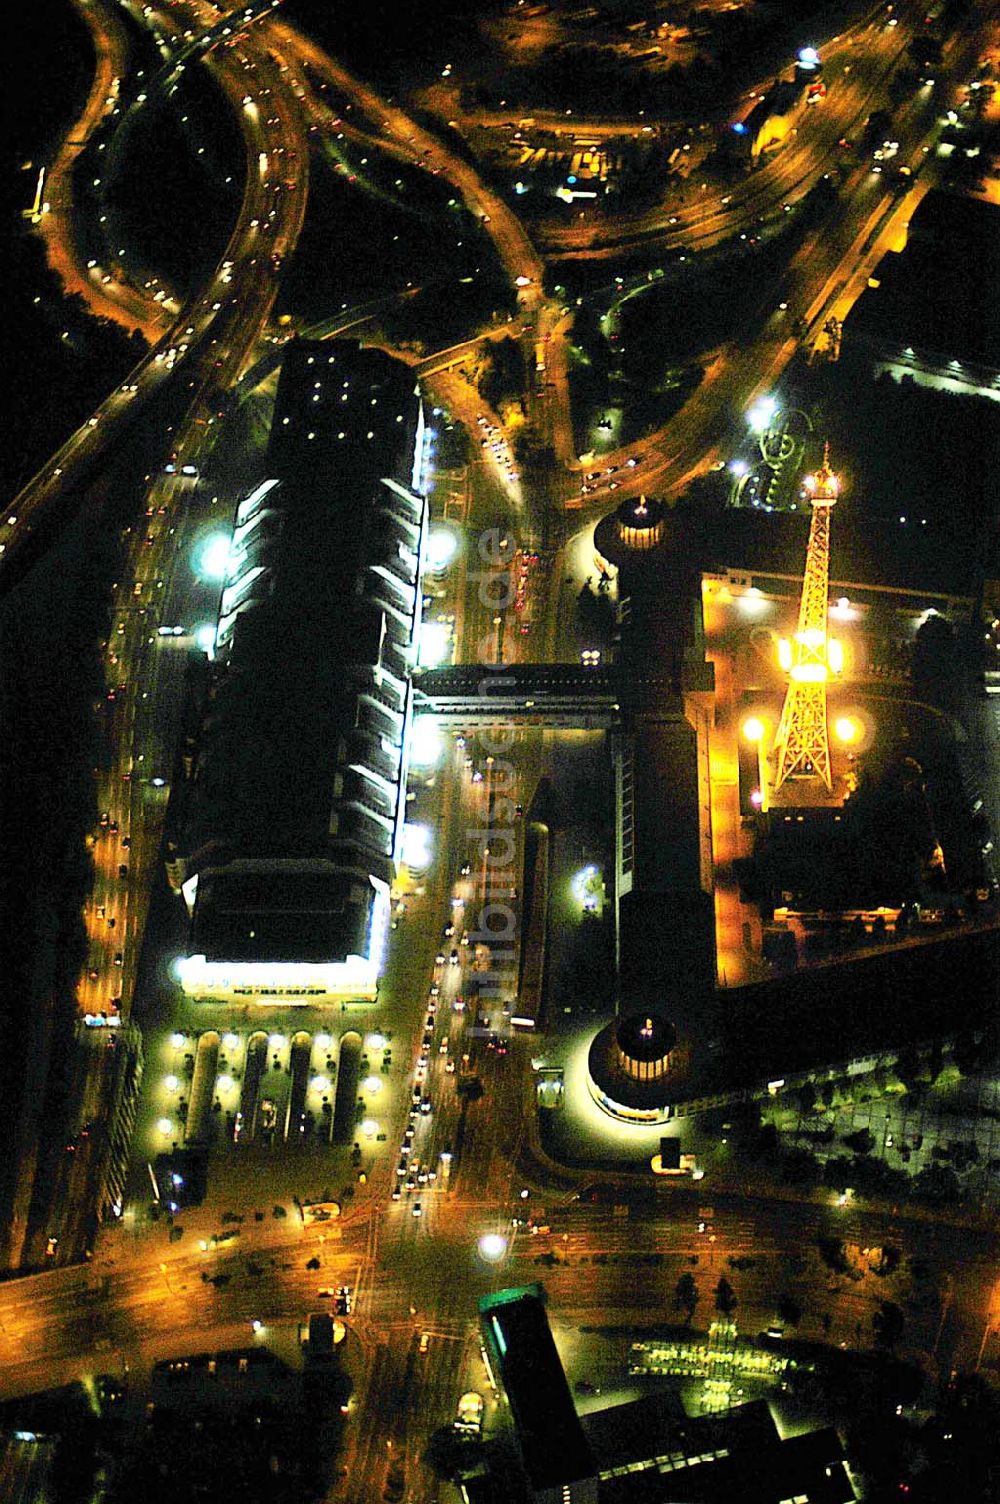 Nacht-Luftaufnahme Berlin - Nachtflug über den Berliner Funkturm